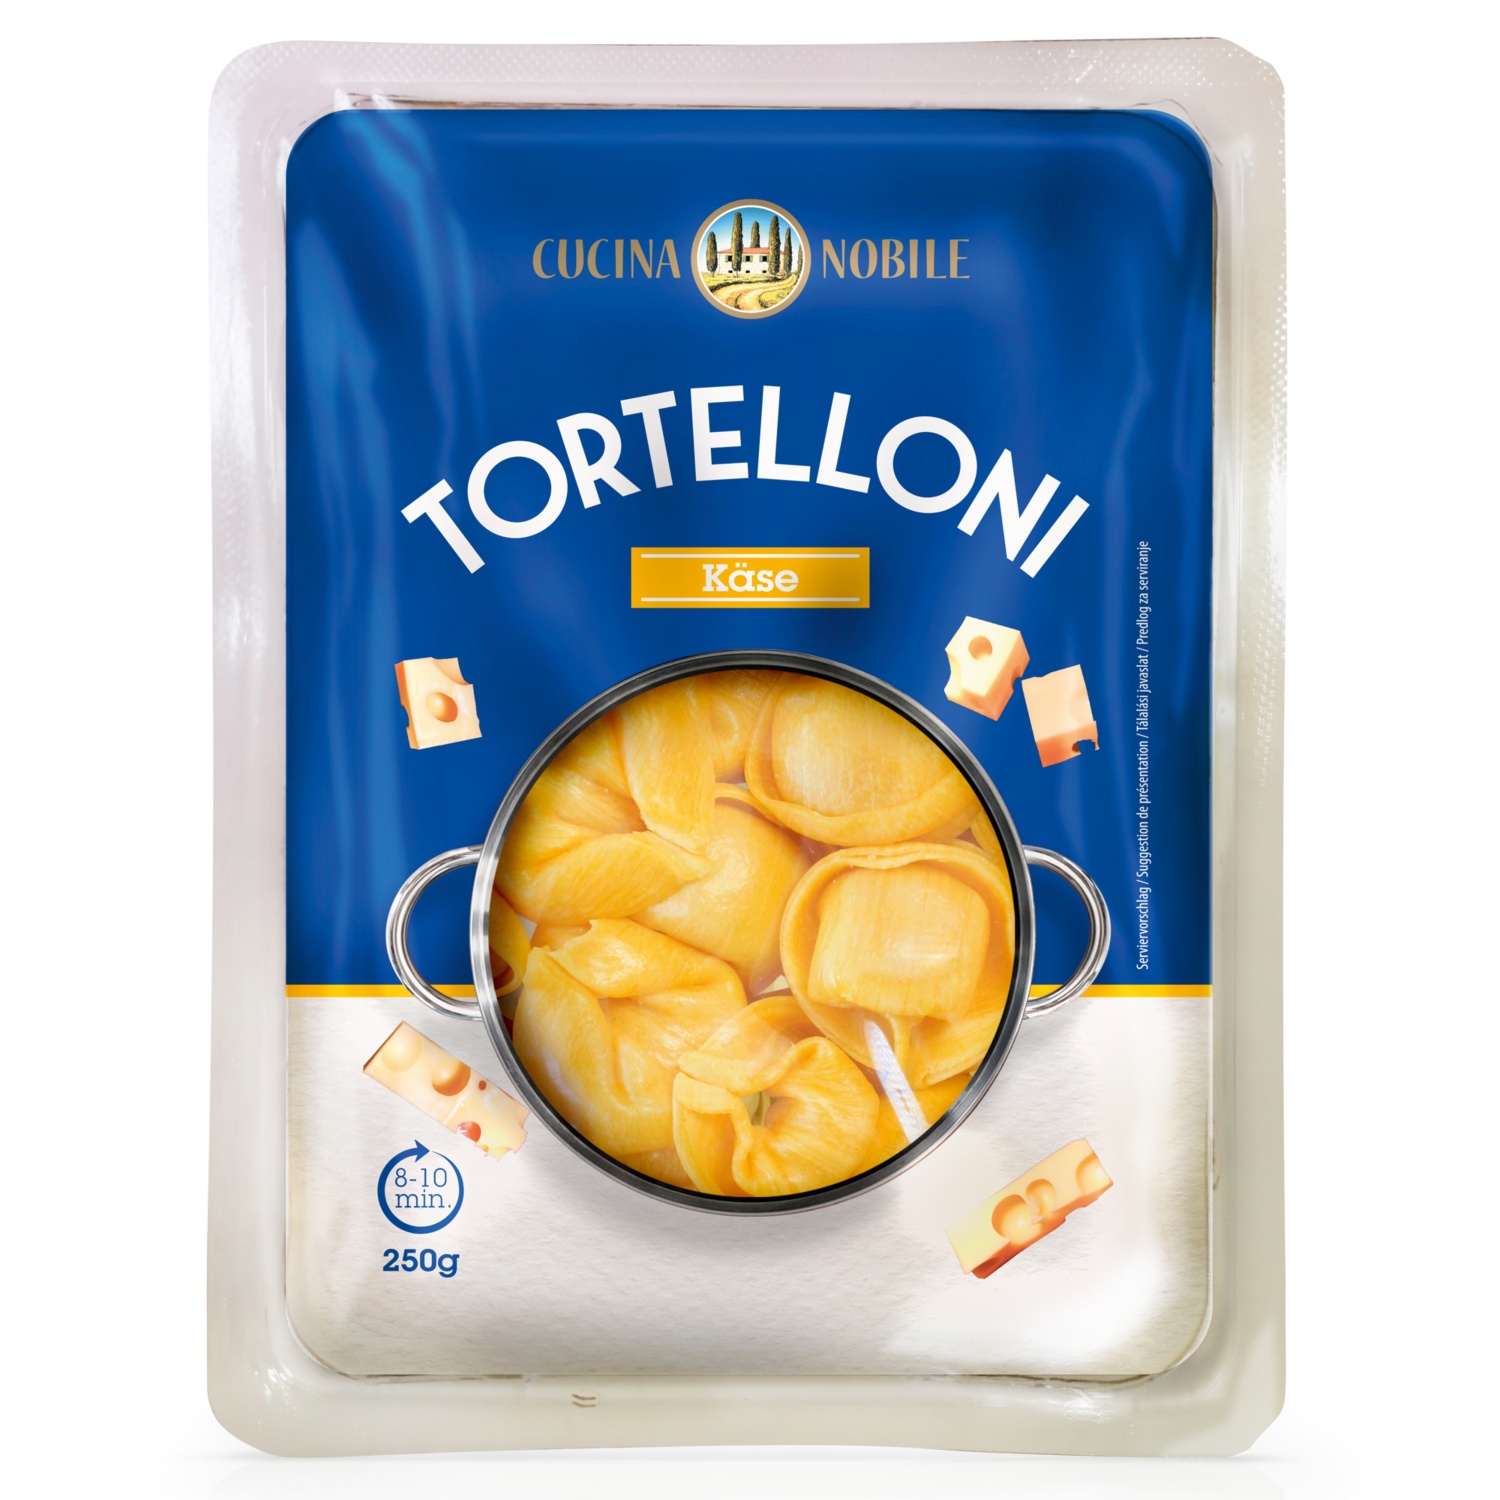 CUCINA NOBILE Tortellioni mit Käse